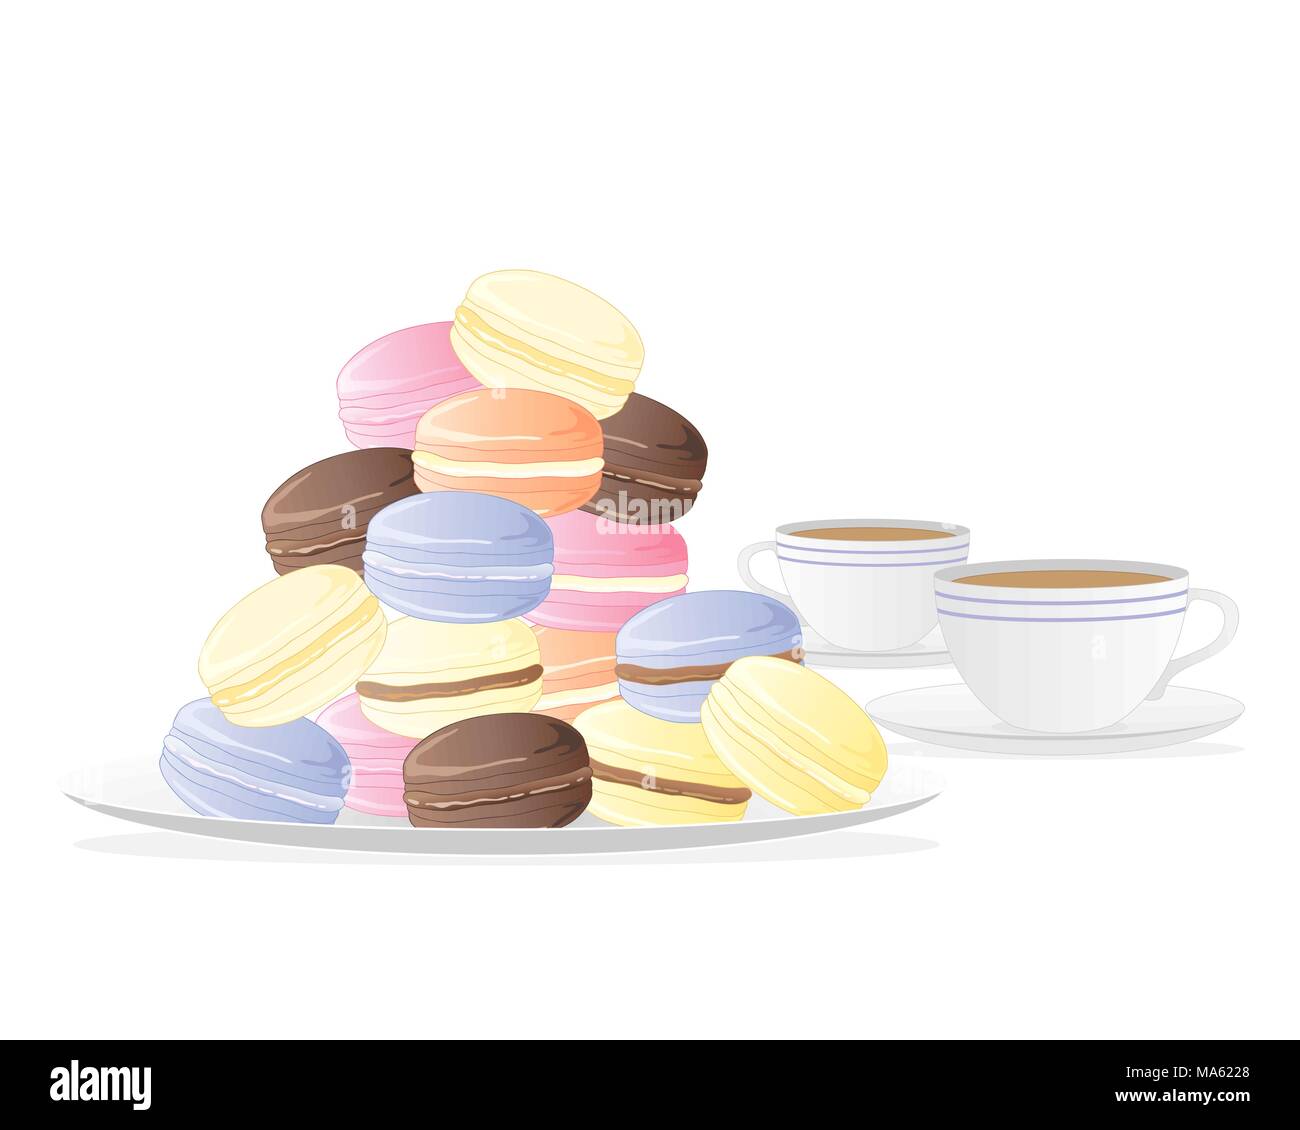 Un vecteur illustration en format eps 10 d'une plaque de macarons à la meringue avec deux tasses de thé isolé sur fond blanc Illustration de Vecteur